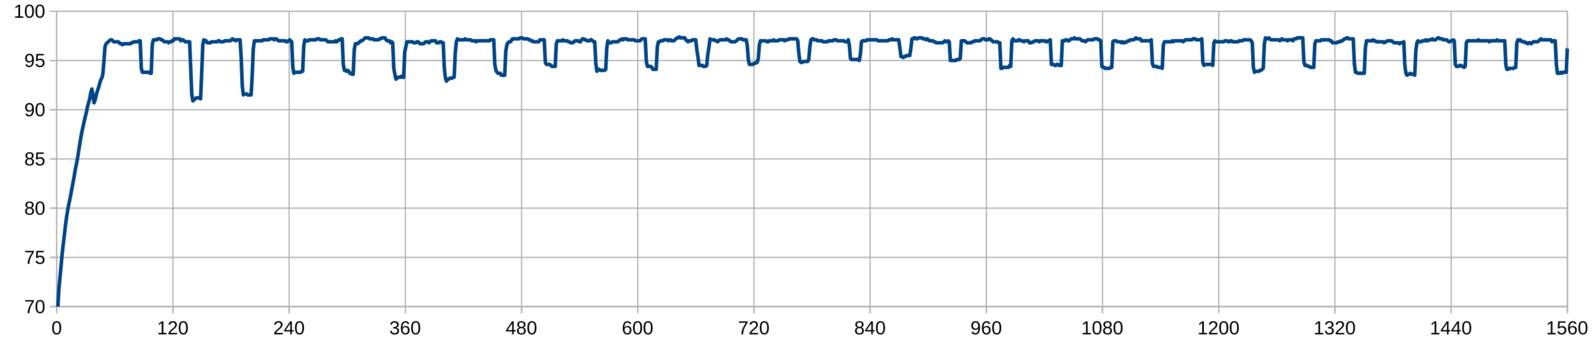 Plot of temperature versus time during 30 Cinebench R15 runs